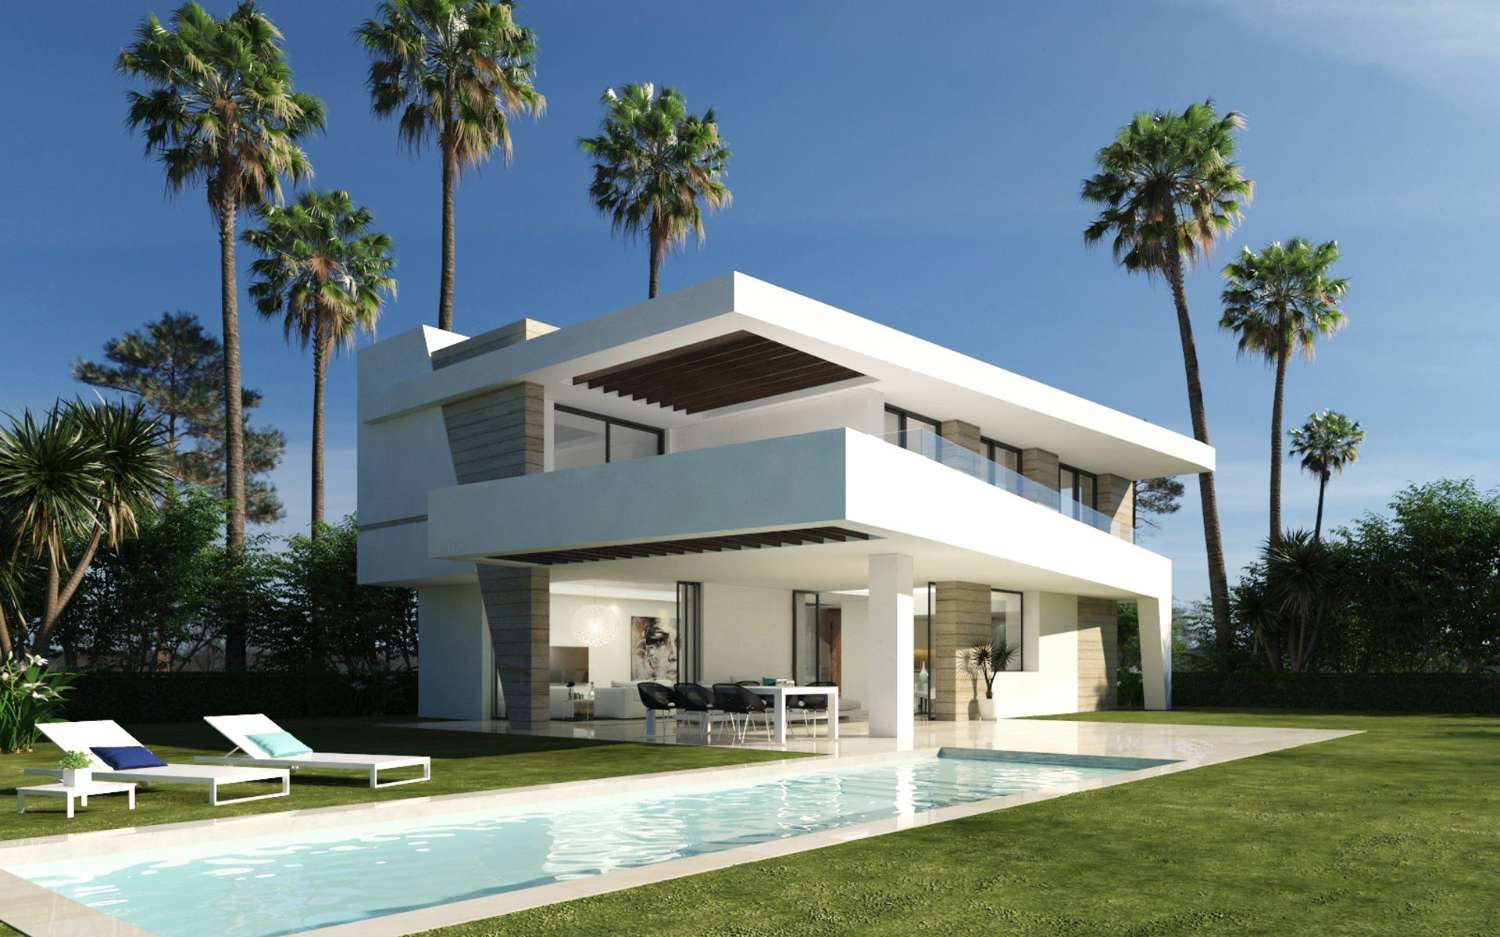 Freistehende Villa in der Nähe von 3 Golfplätzen in Estepona